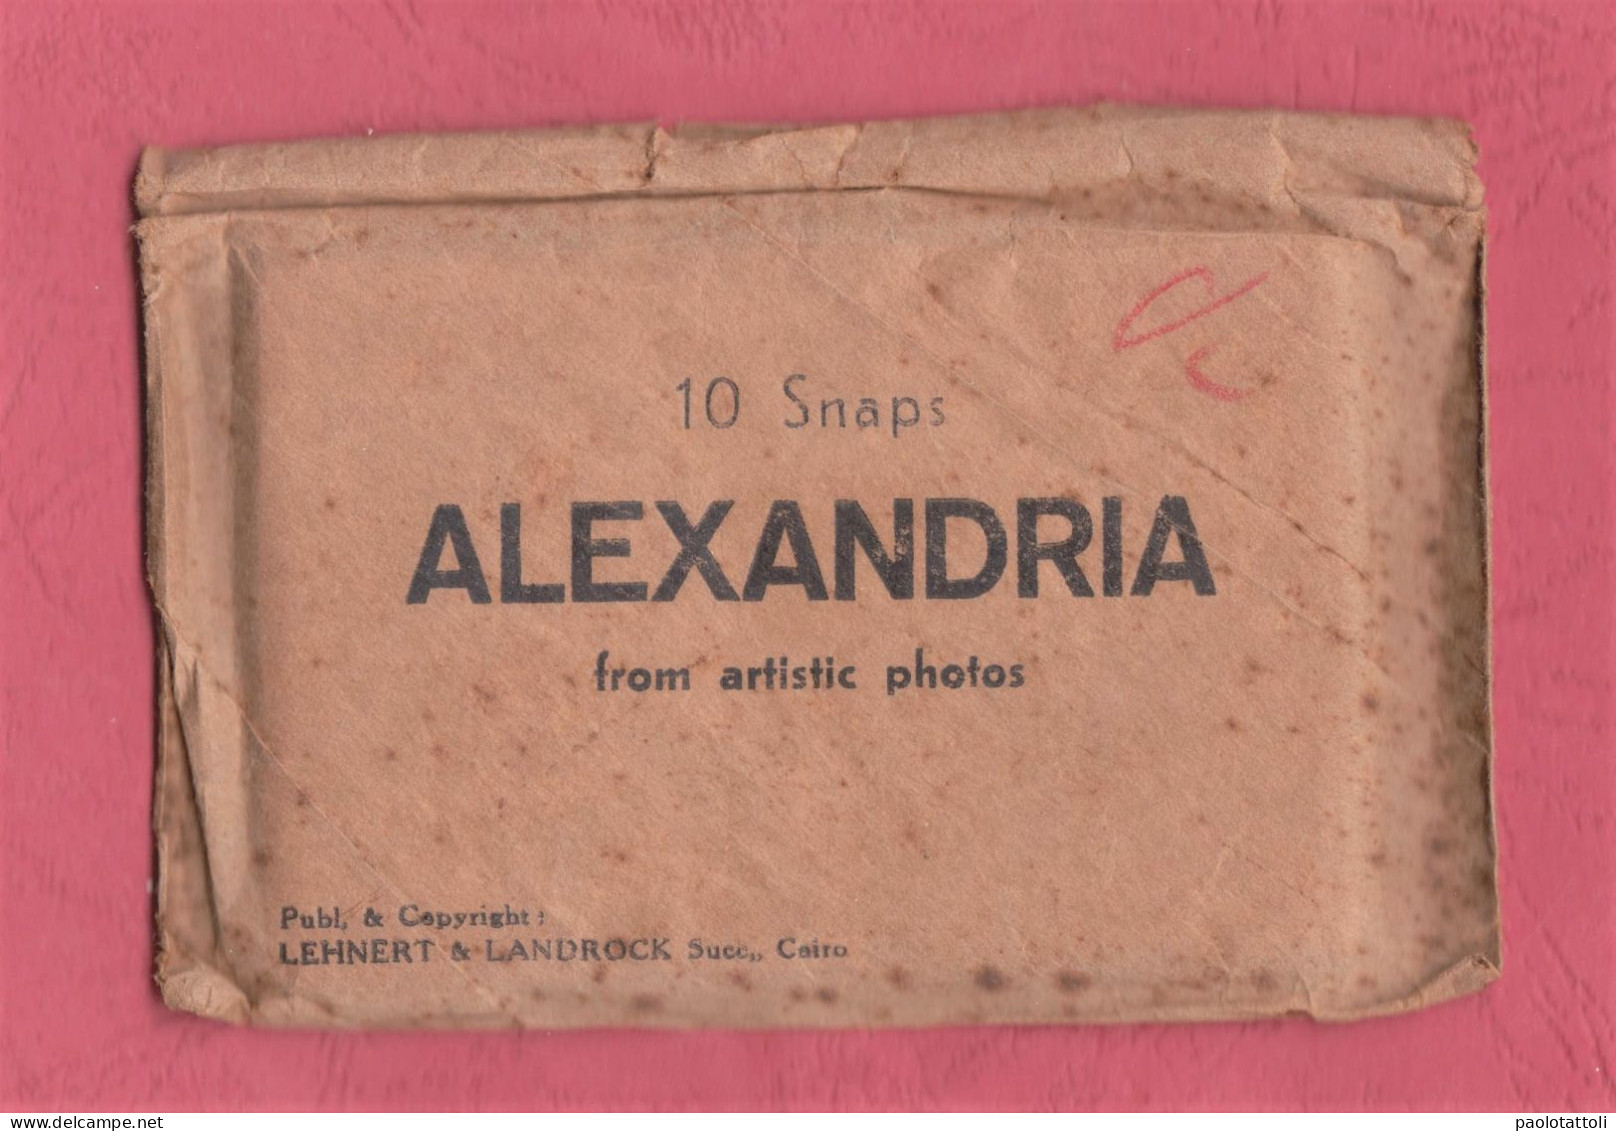 Egypt. Alexandria. 10 Snap From Artistic Photos. Publ. & Copyright Lehnert & Landrock. 92x 60mm. - Recordatorios